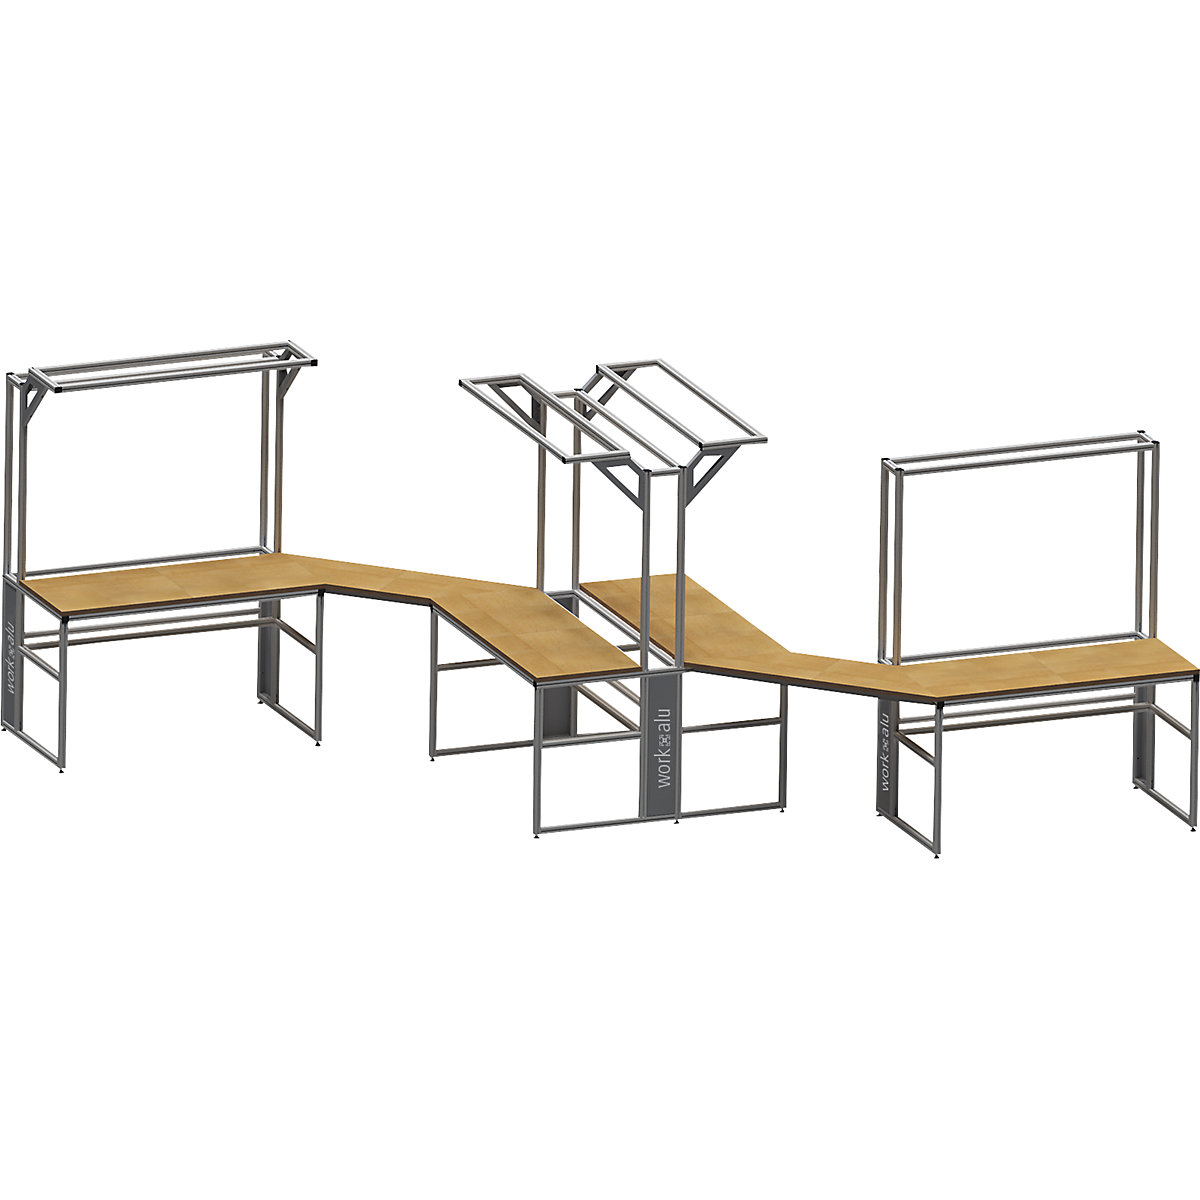 Aluminijasta delovna miza s sistemsko nadgradnjo workalu®, dvostranska – bedrunka hirth (Slika izdelka 4)-3